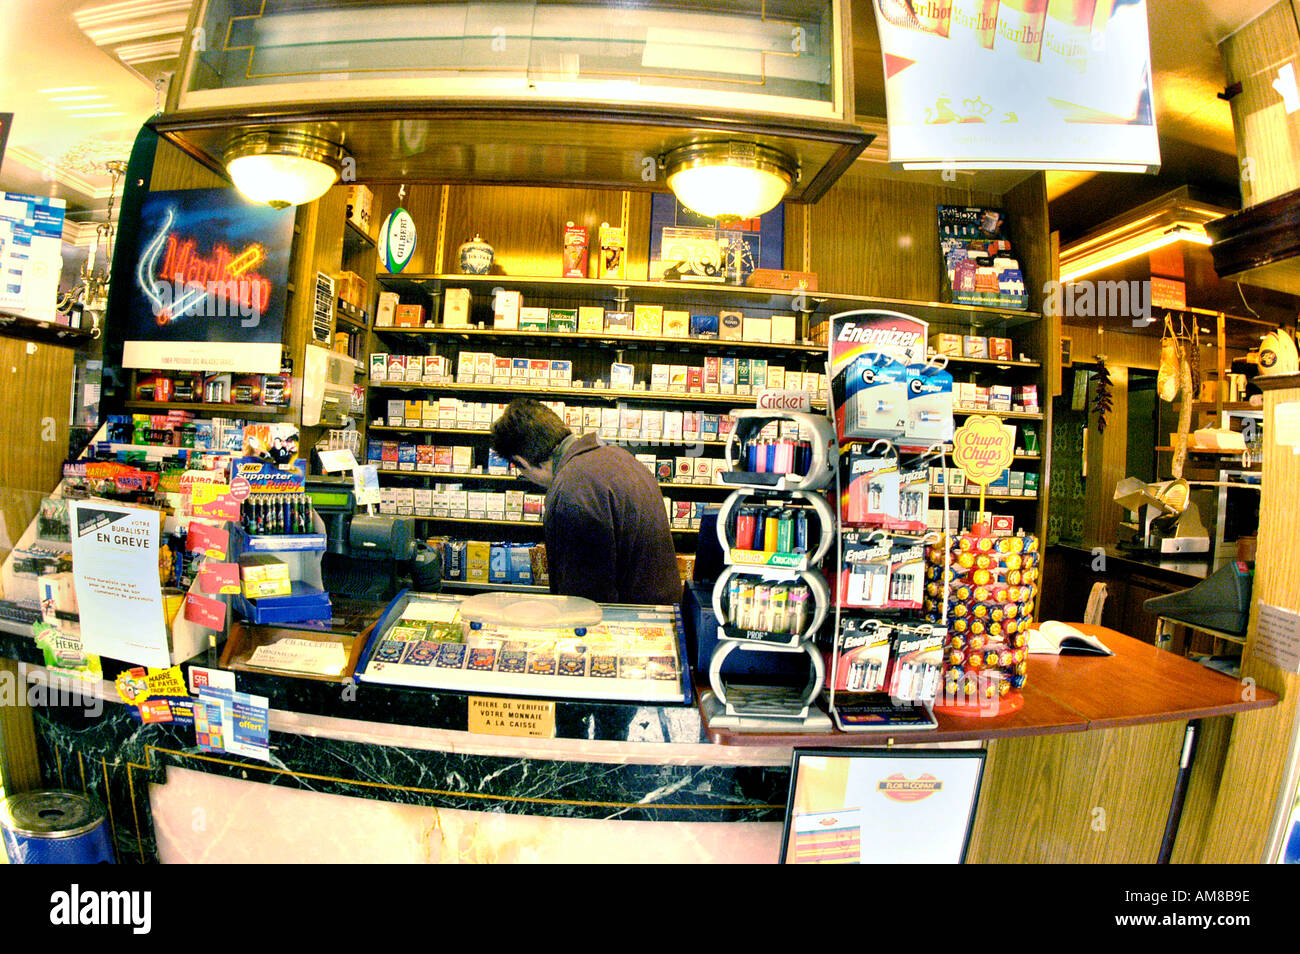 Paris France, French Tobacco Shop Paris Café, 'Le Gallia', Cigarettes on Sale Counter Display Stock Photo